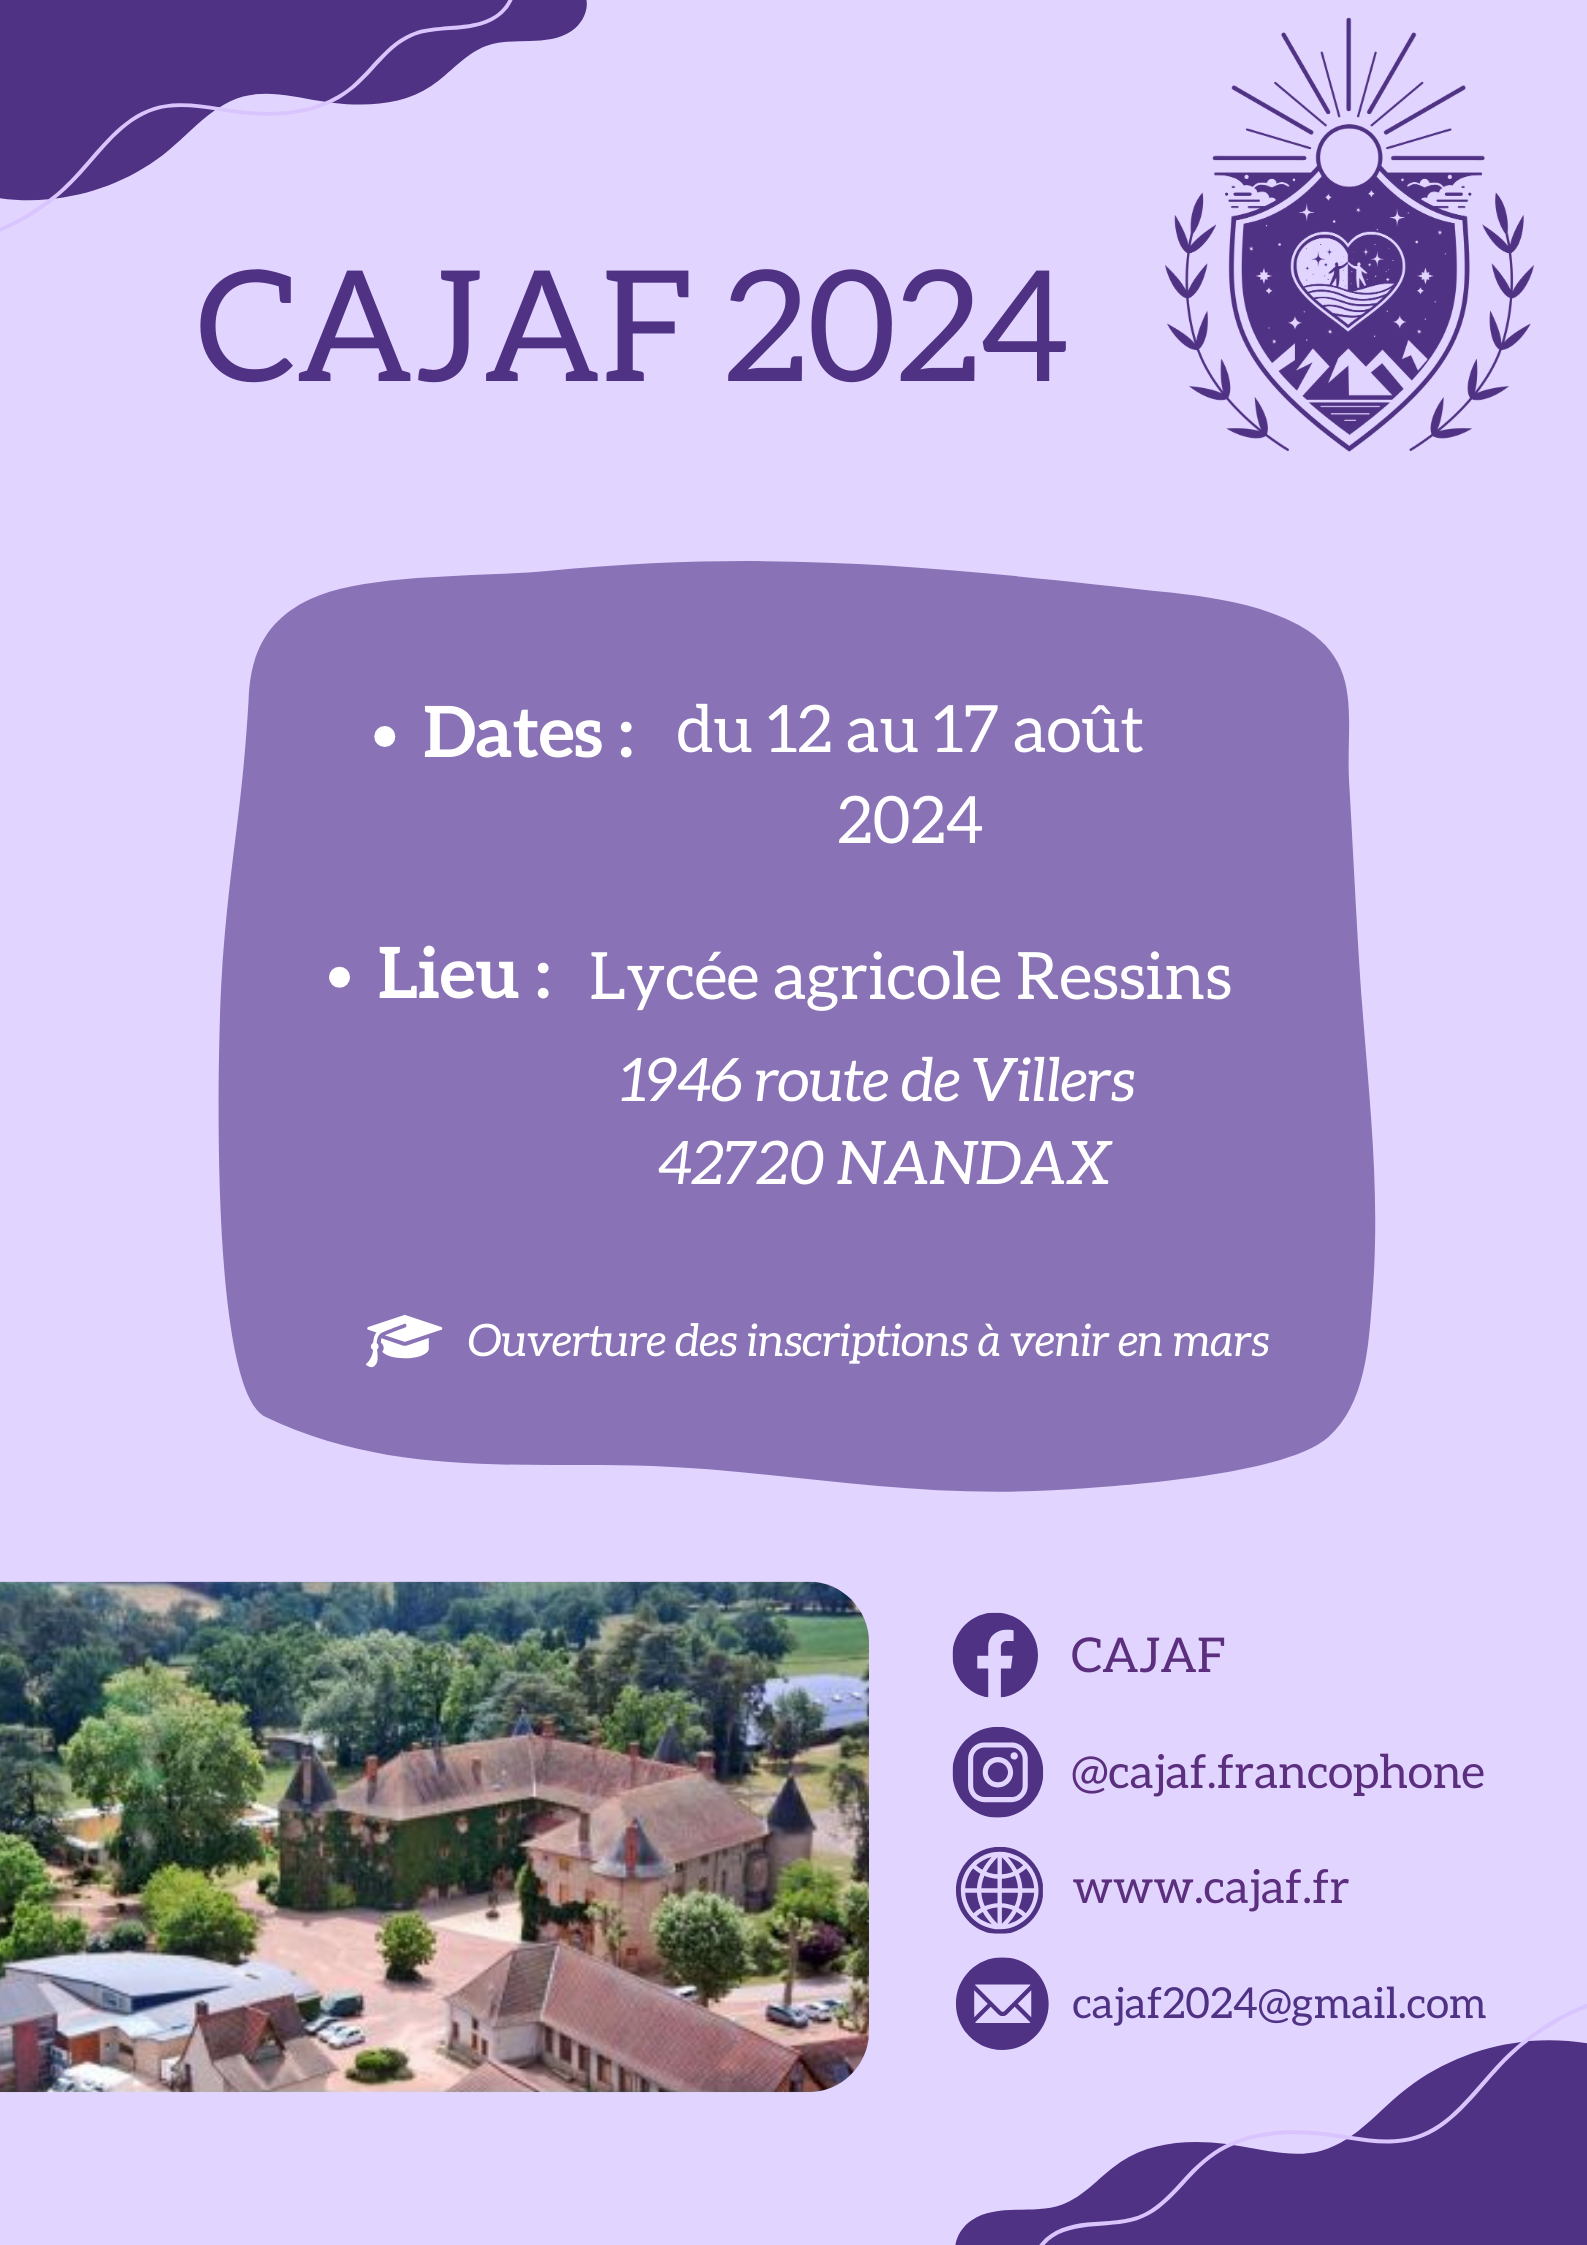 CAJAF 2024 (YSA Conference)